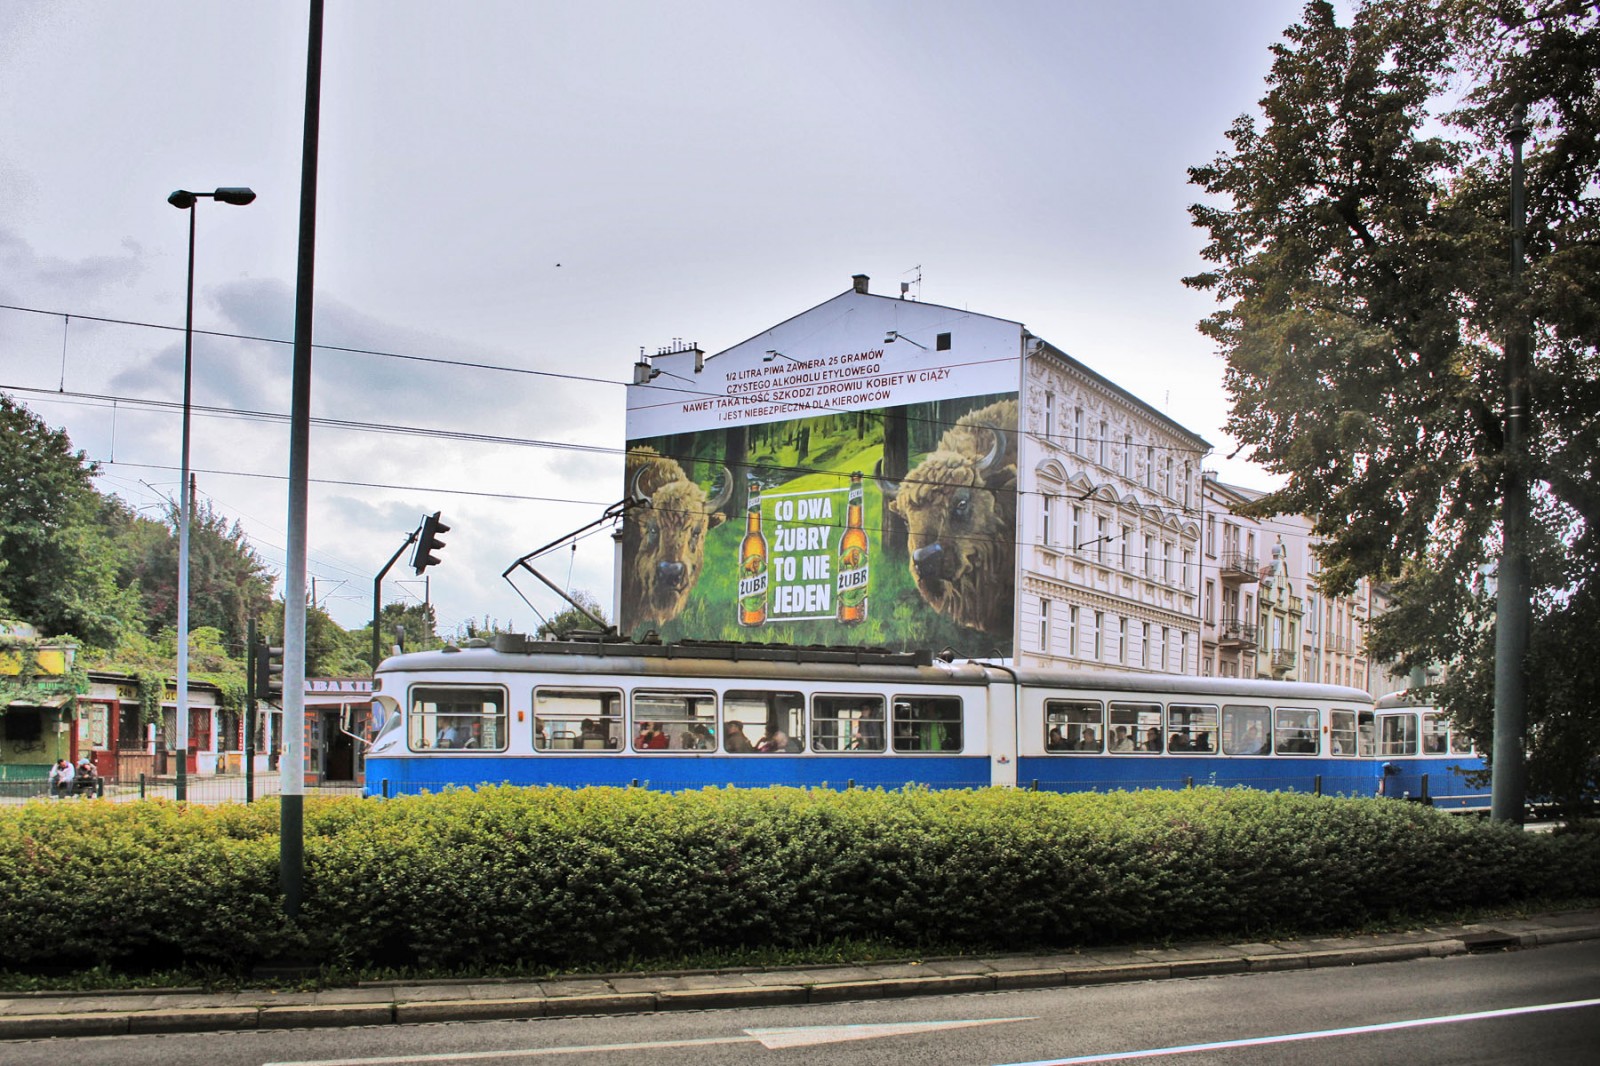 Reklama piwa Żubr w Krakowie co dwa Żubry to nie jeden mural wielkoformatowy | Grafika ścienna dla marki Żubr - Co dwa Żubry to nie jeden | Portfolio